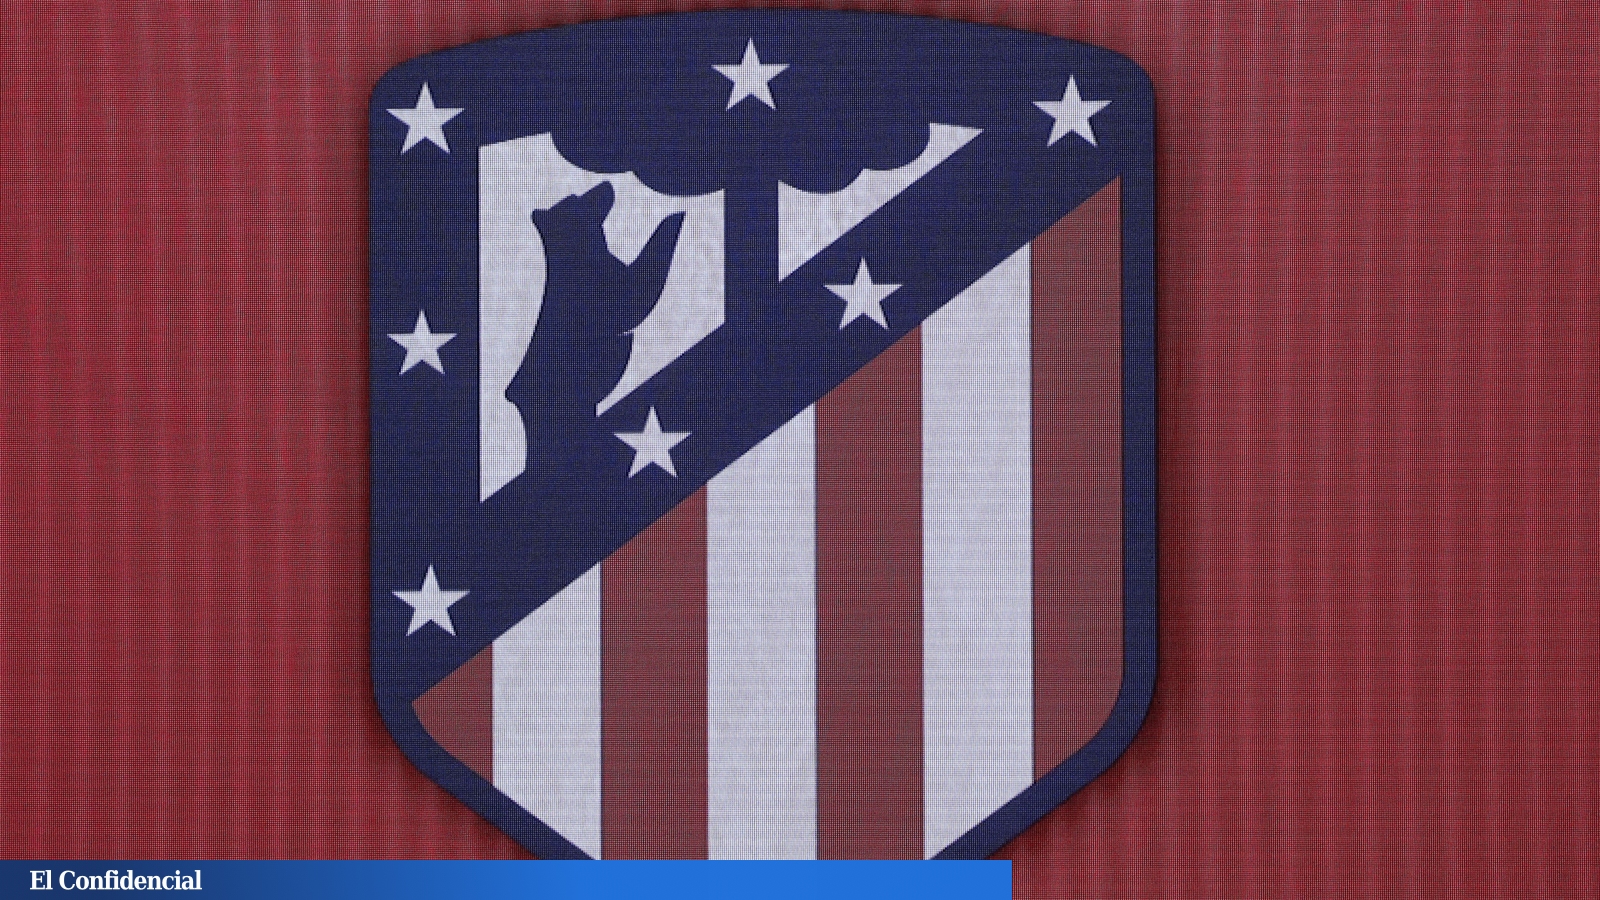 El nuevo escudo, a debate en el Atlético de Madrid